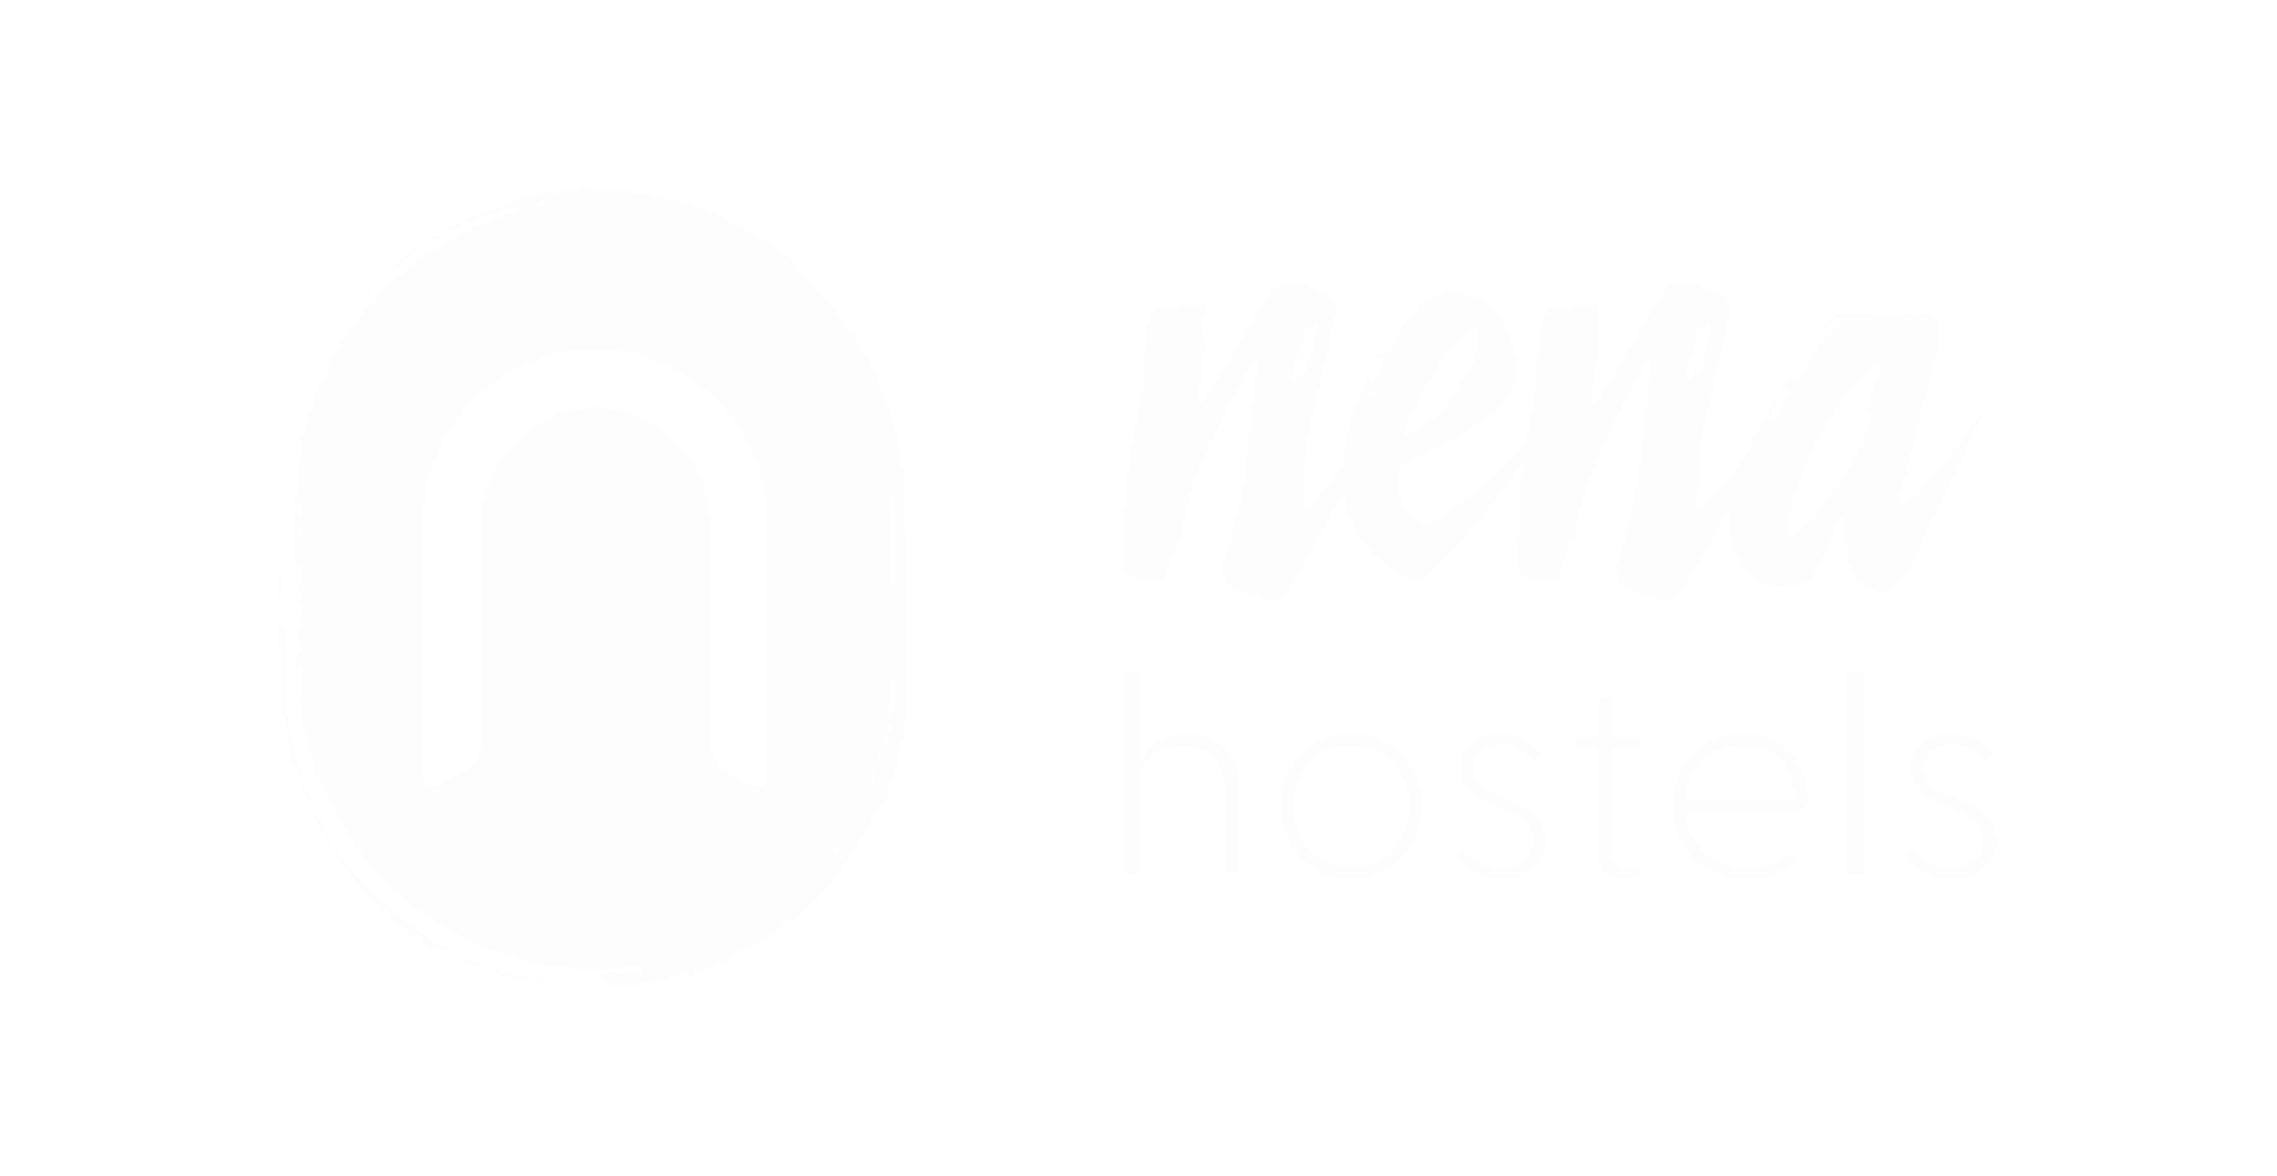 Kopie_von_nena-hostels_nena_hostels-removebg-preview 1 1